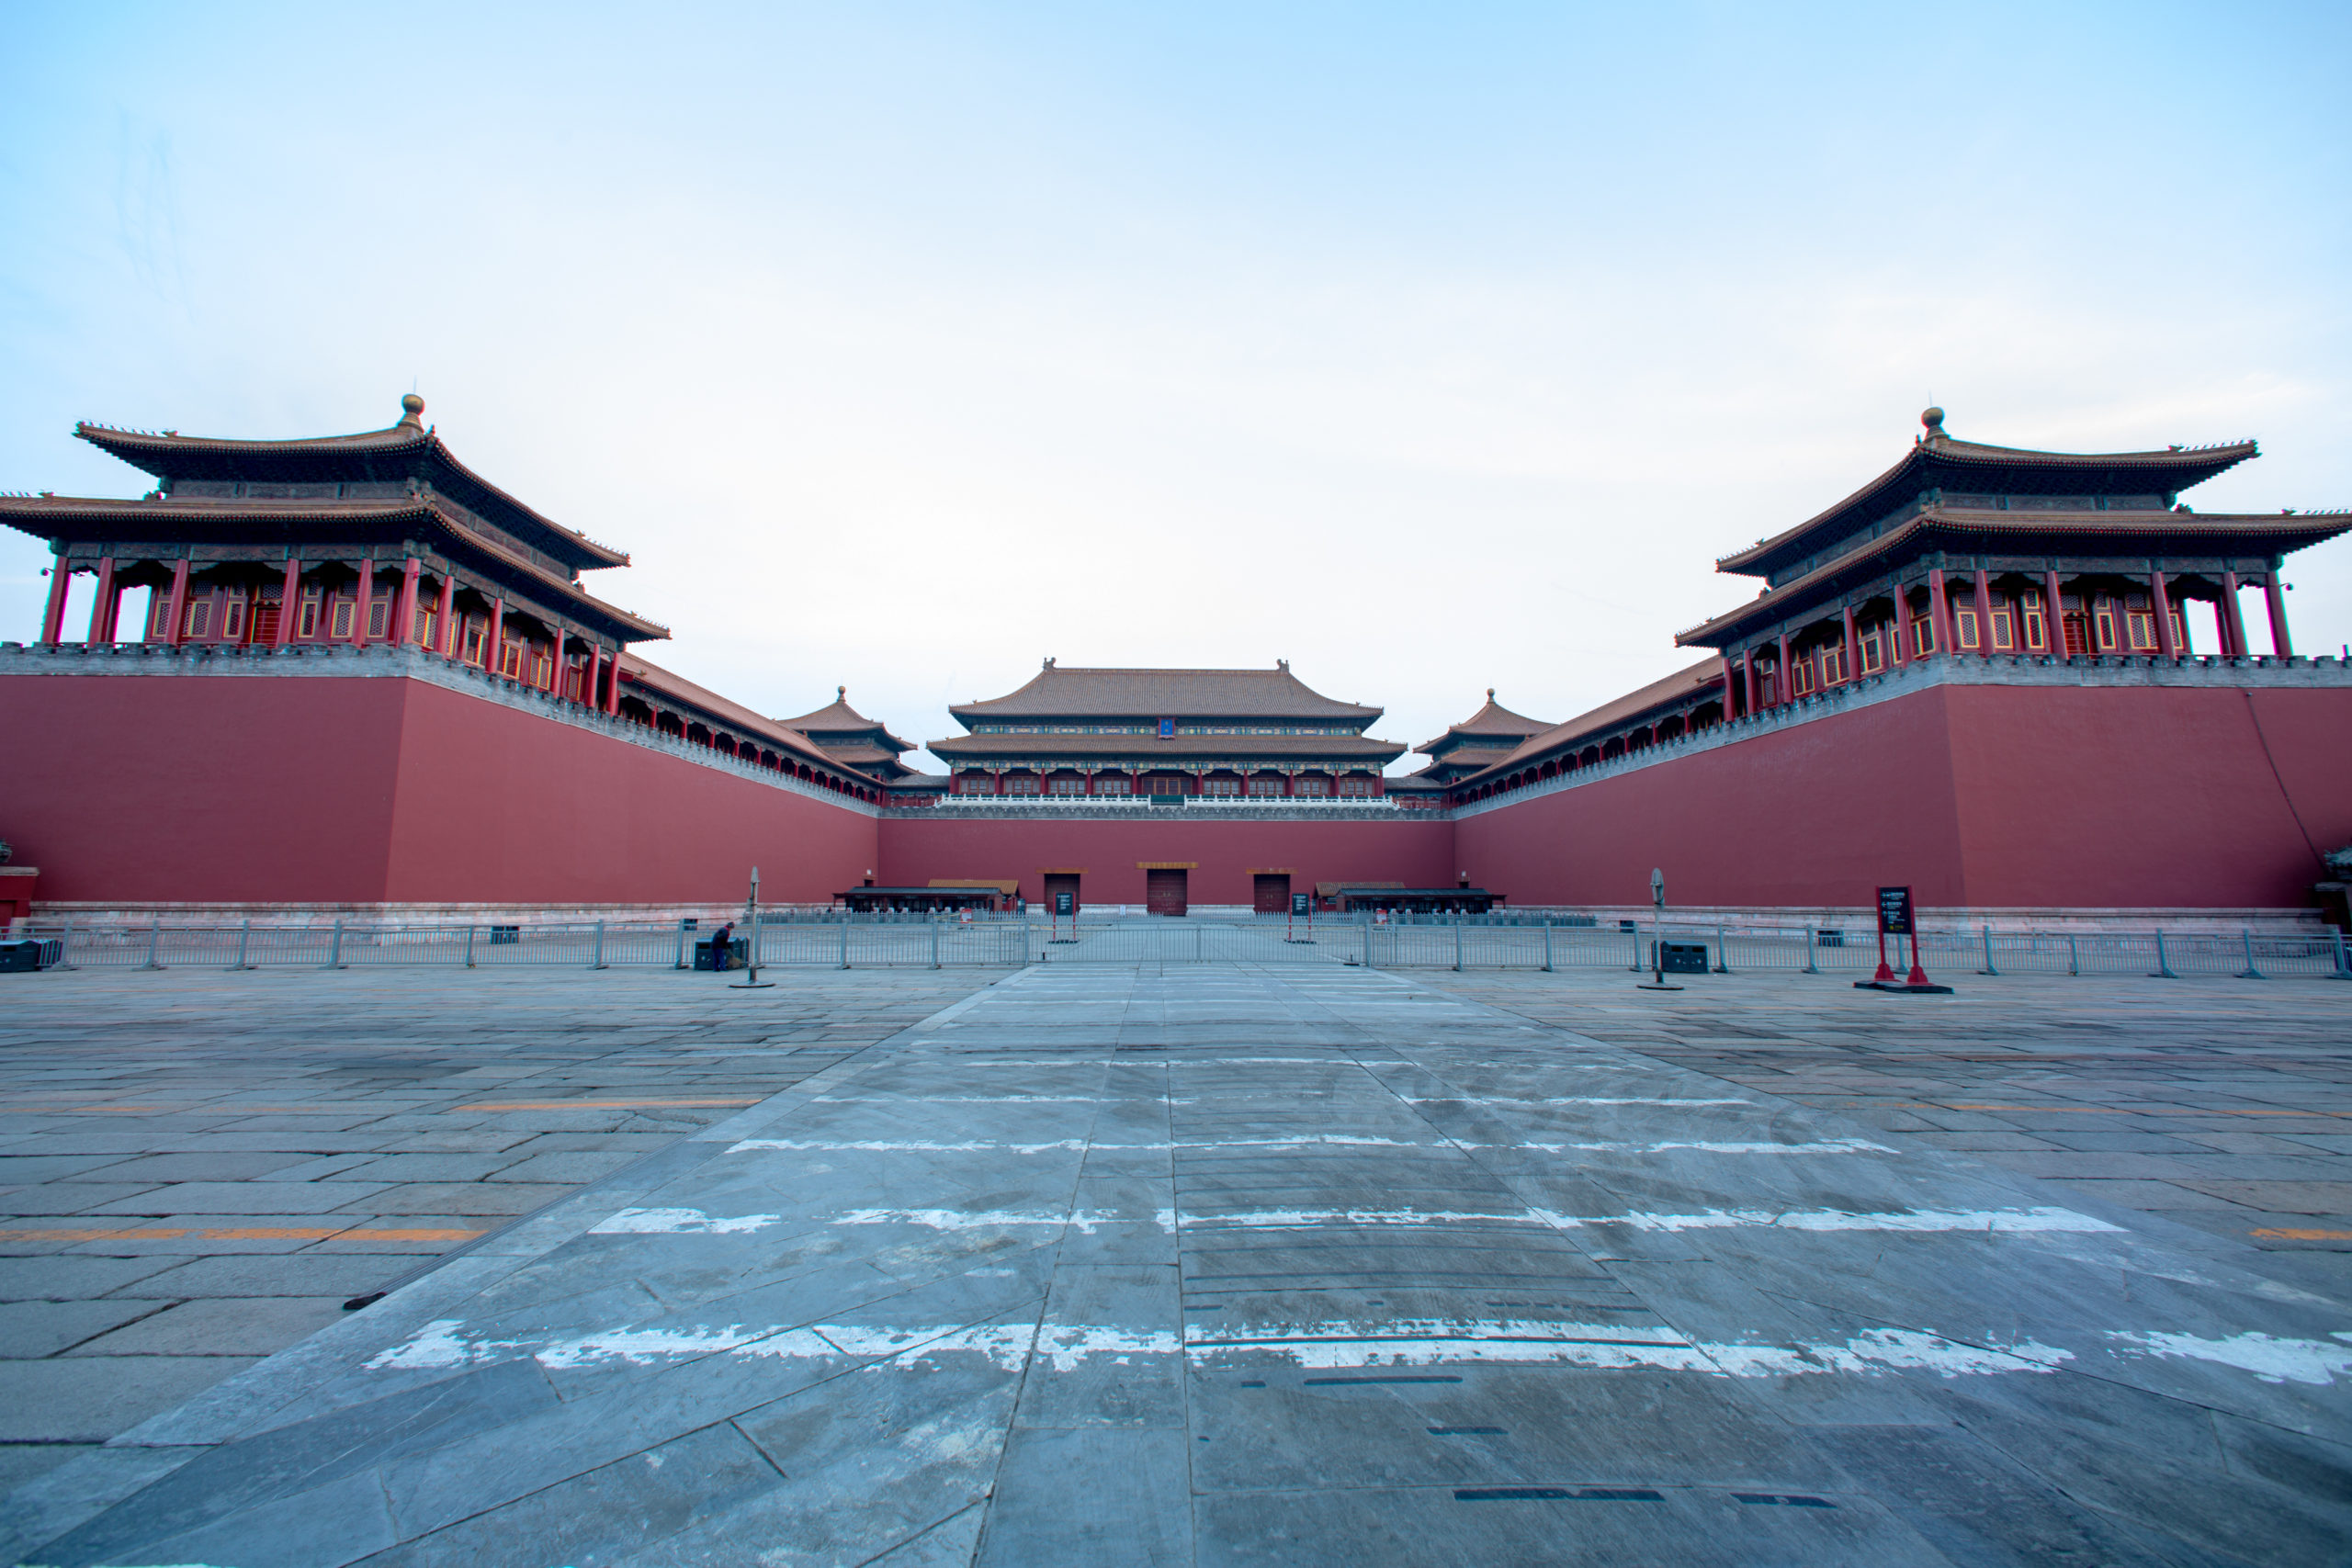 forbidden city palace